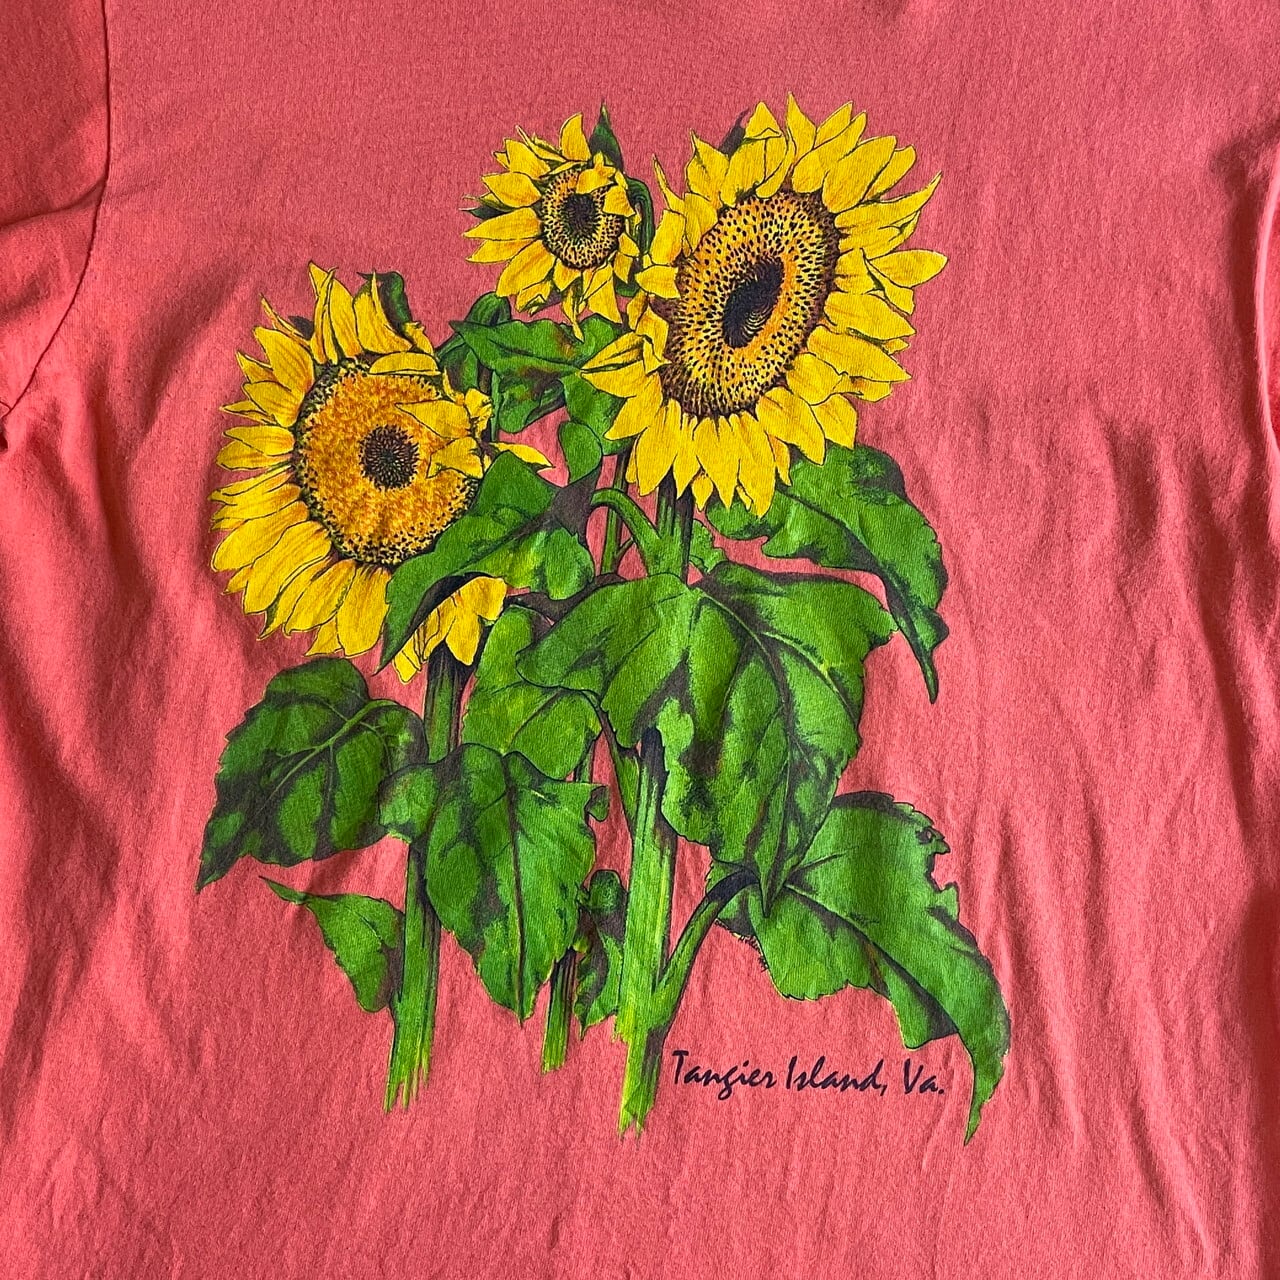 花柄Tシャツ 80s 90s